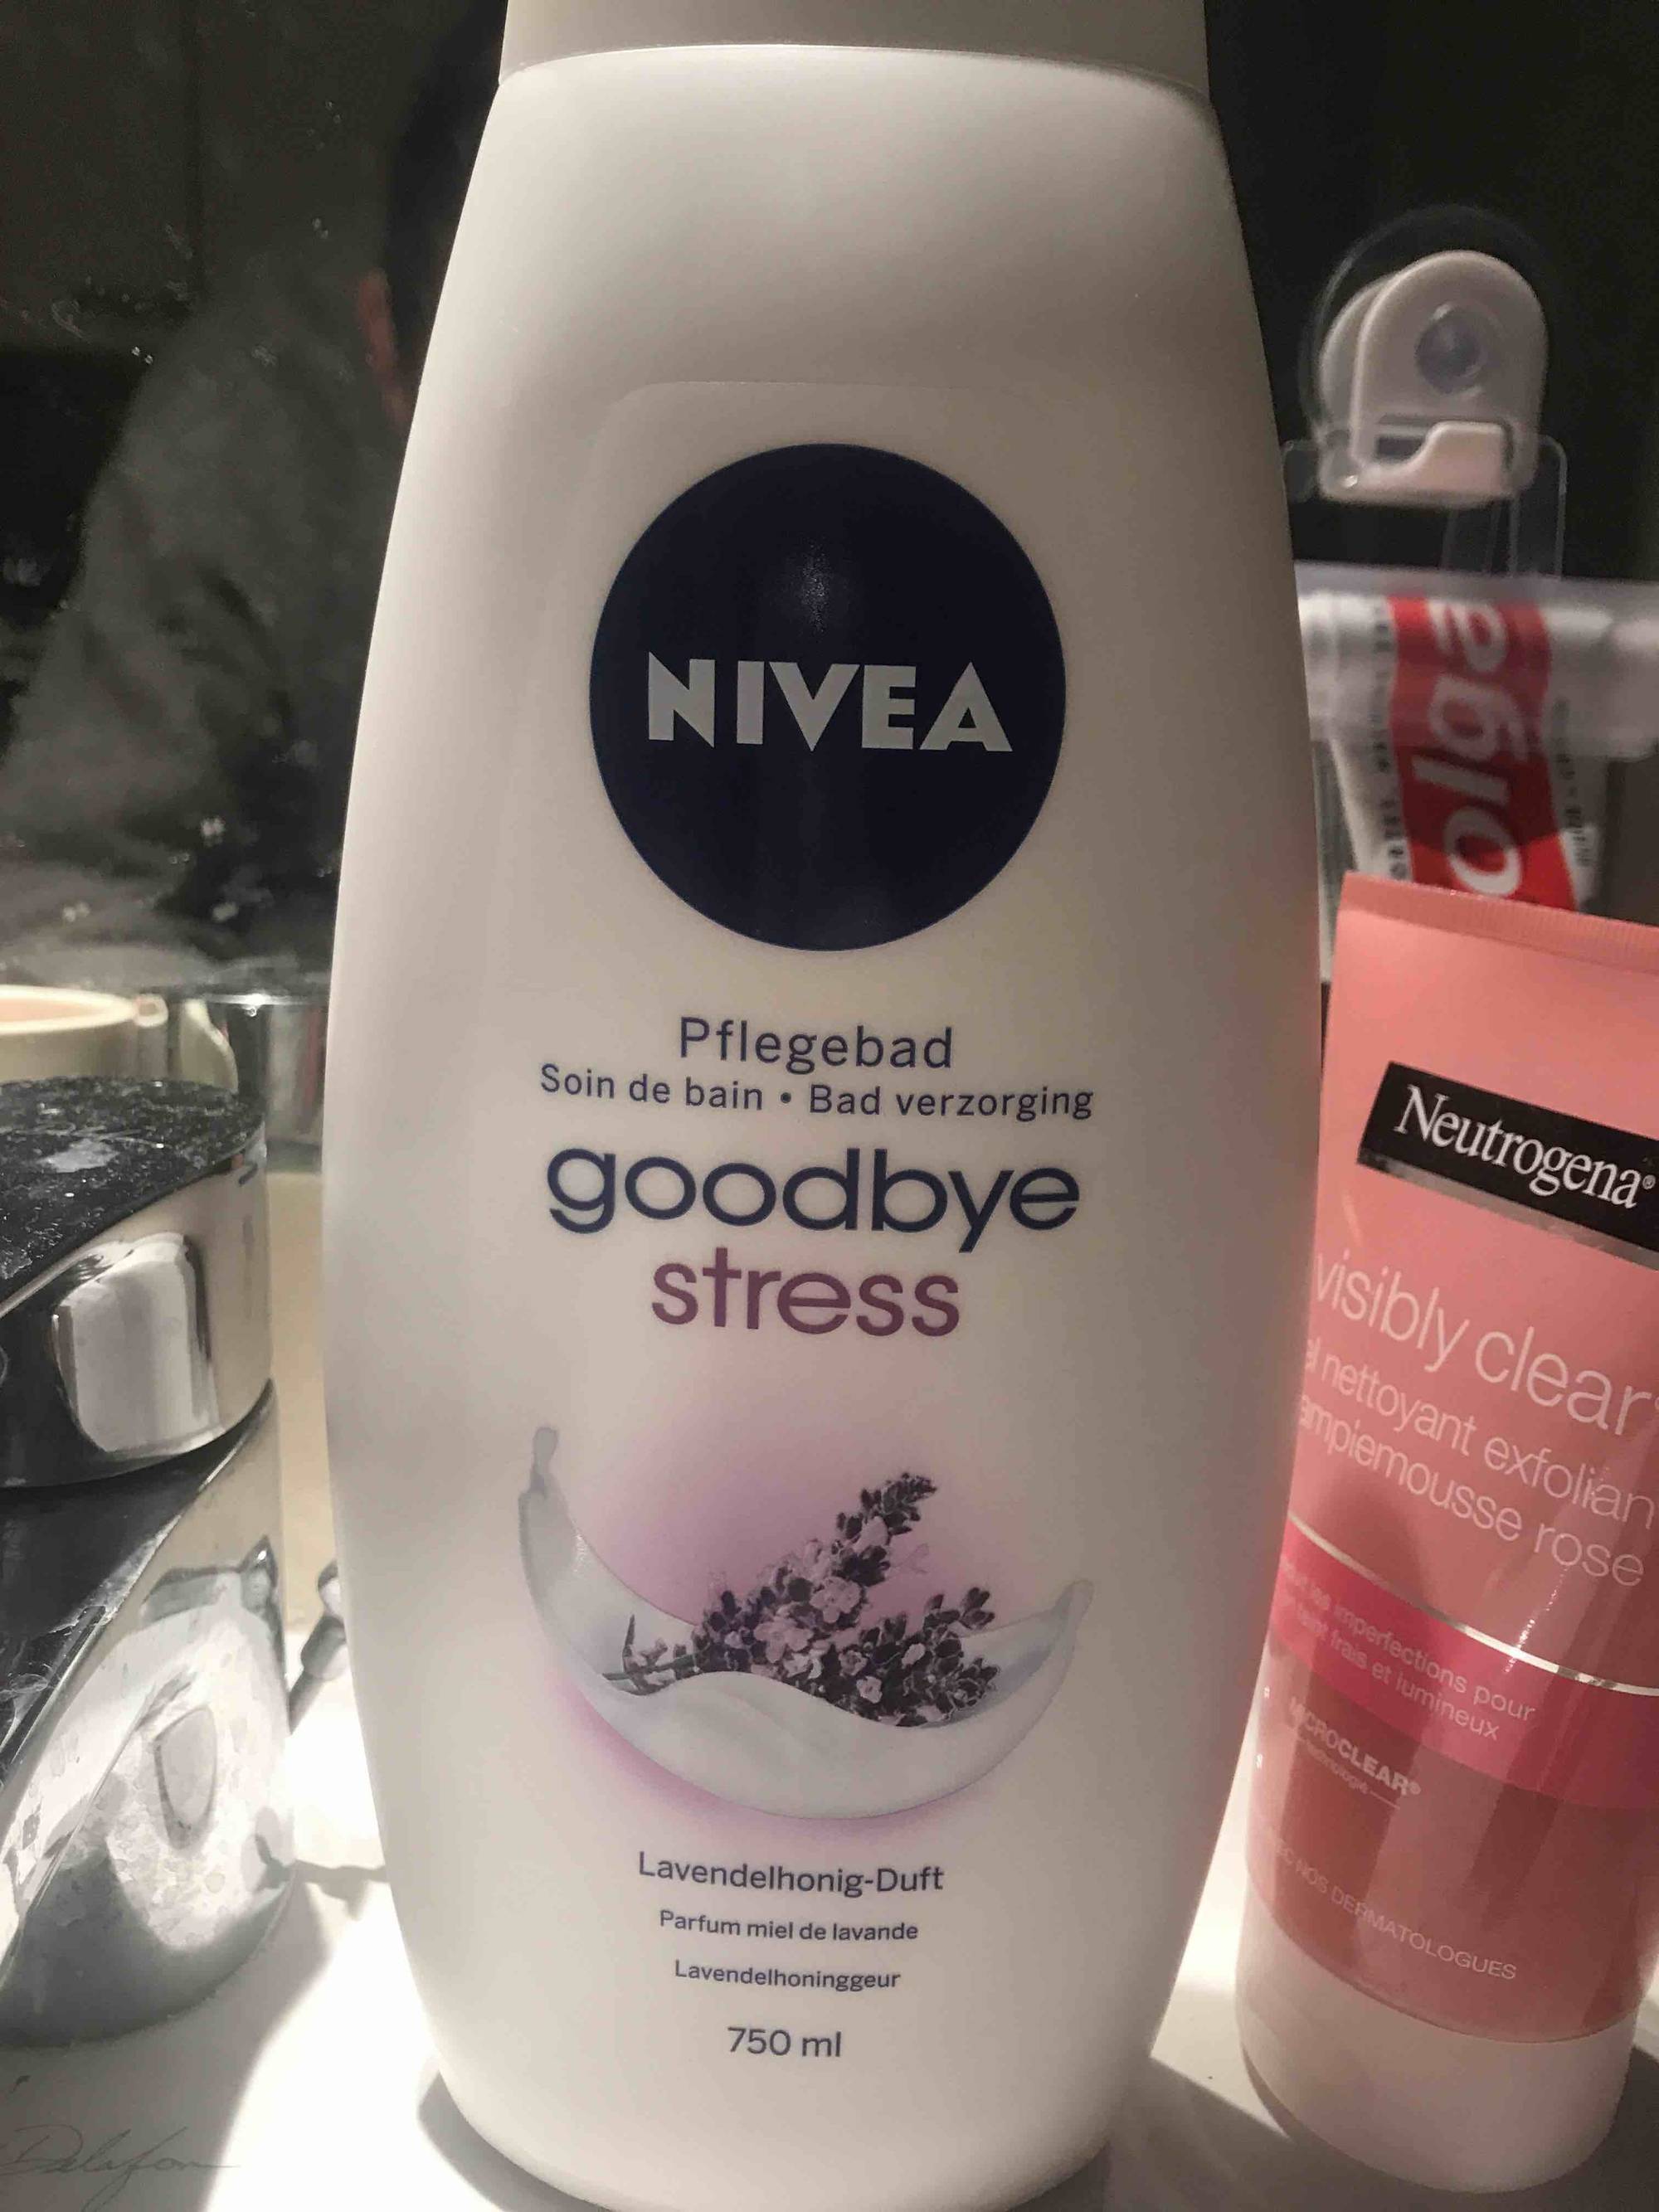 NIVEA - Goodbye stress - Soin de bain